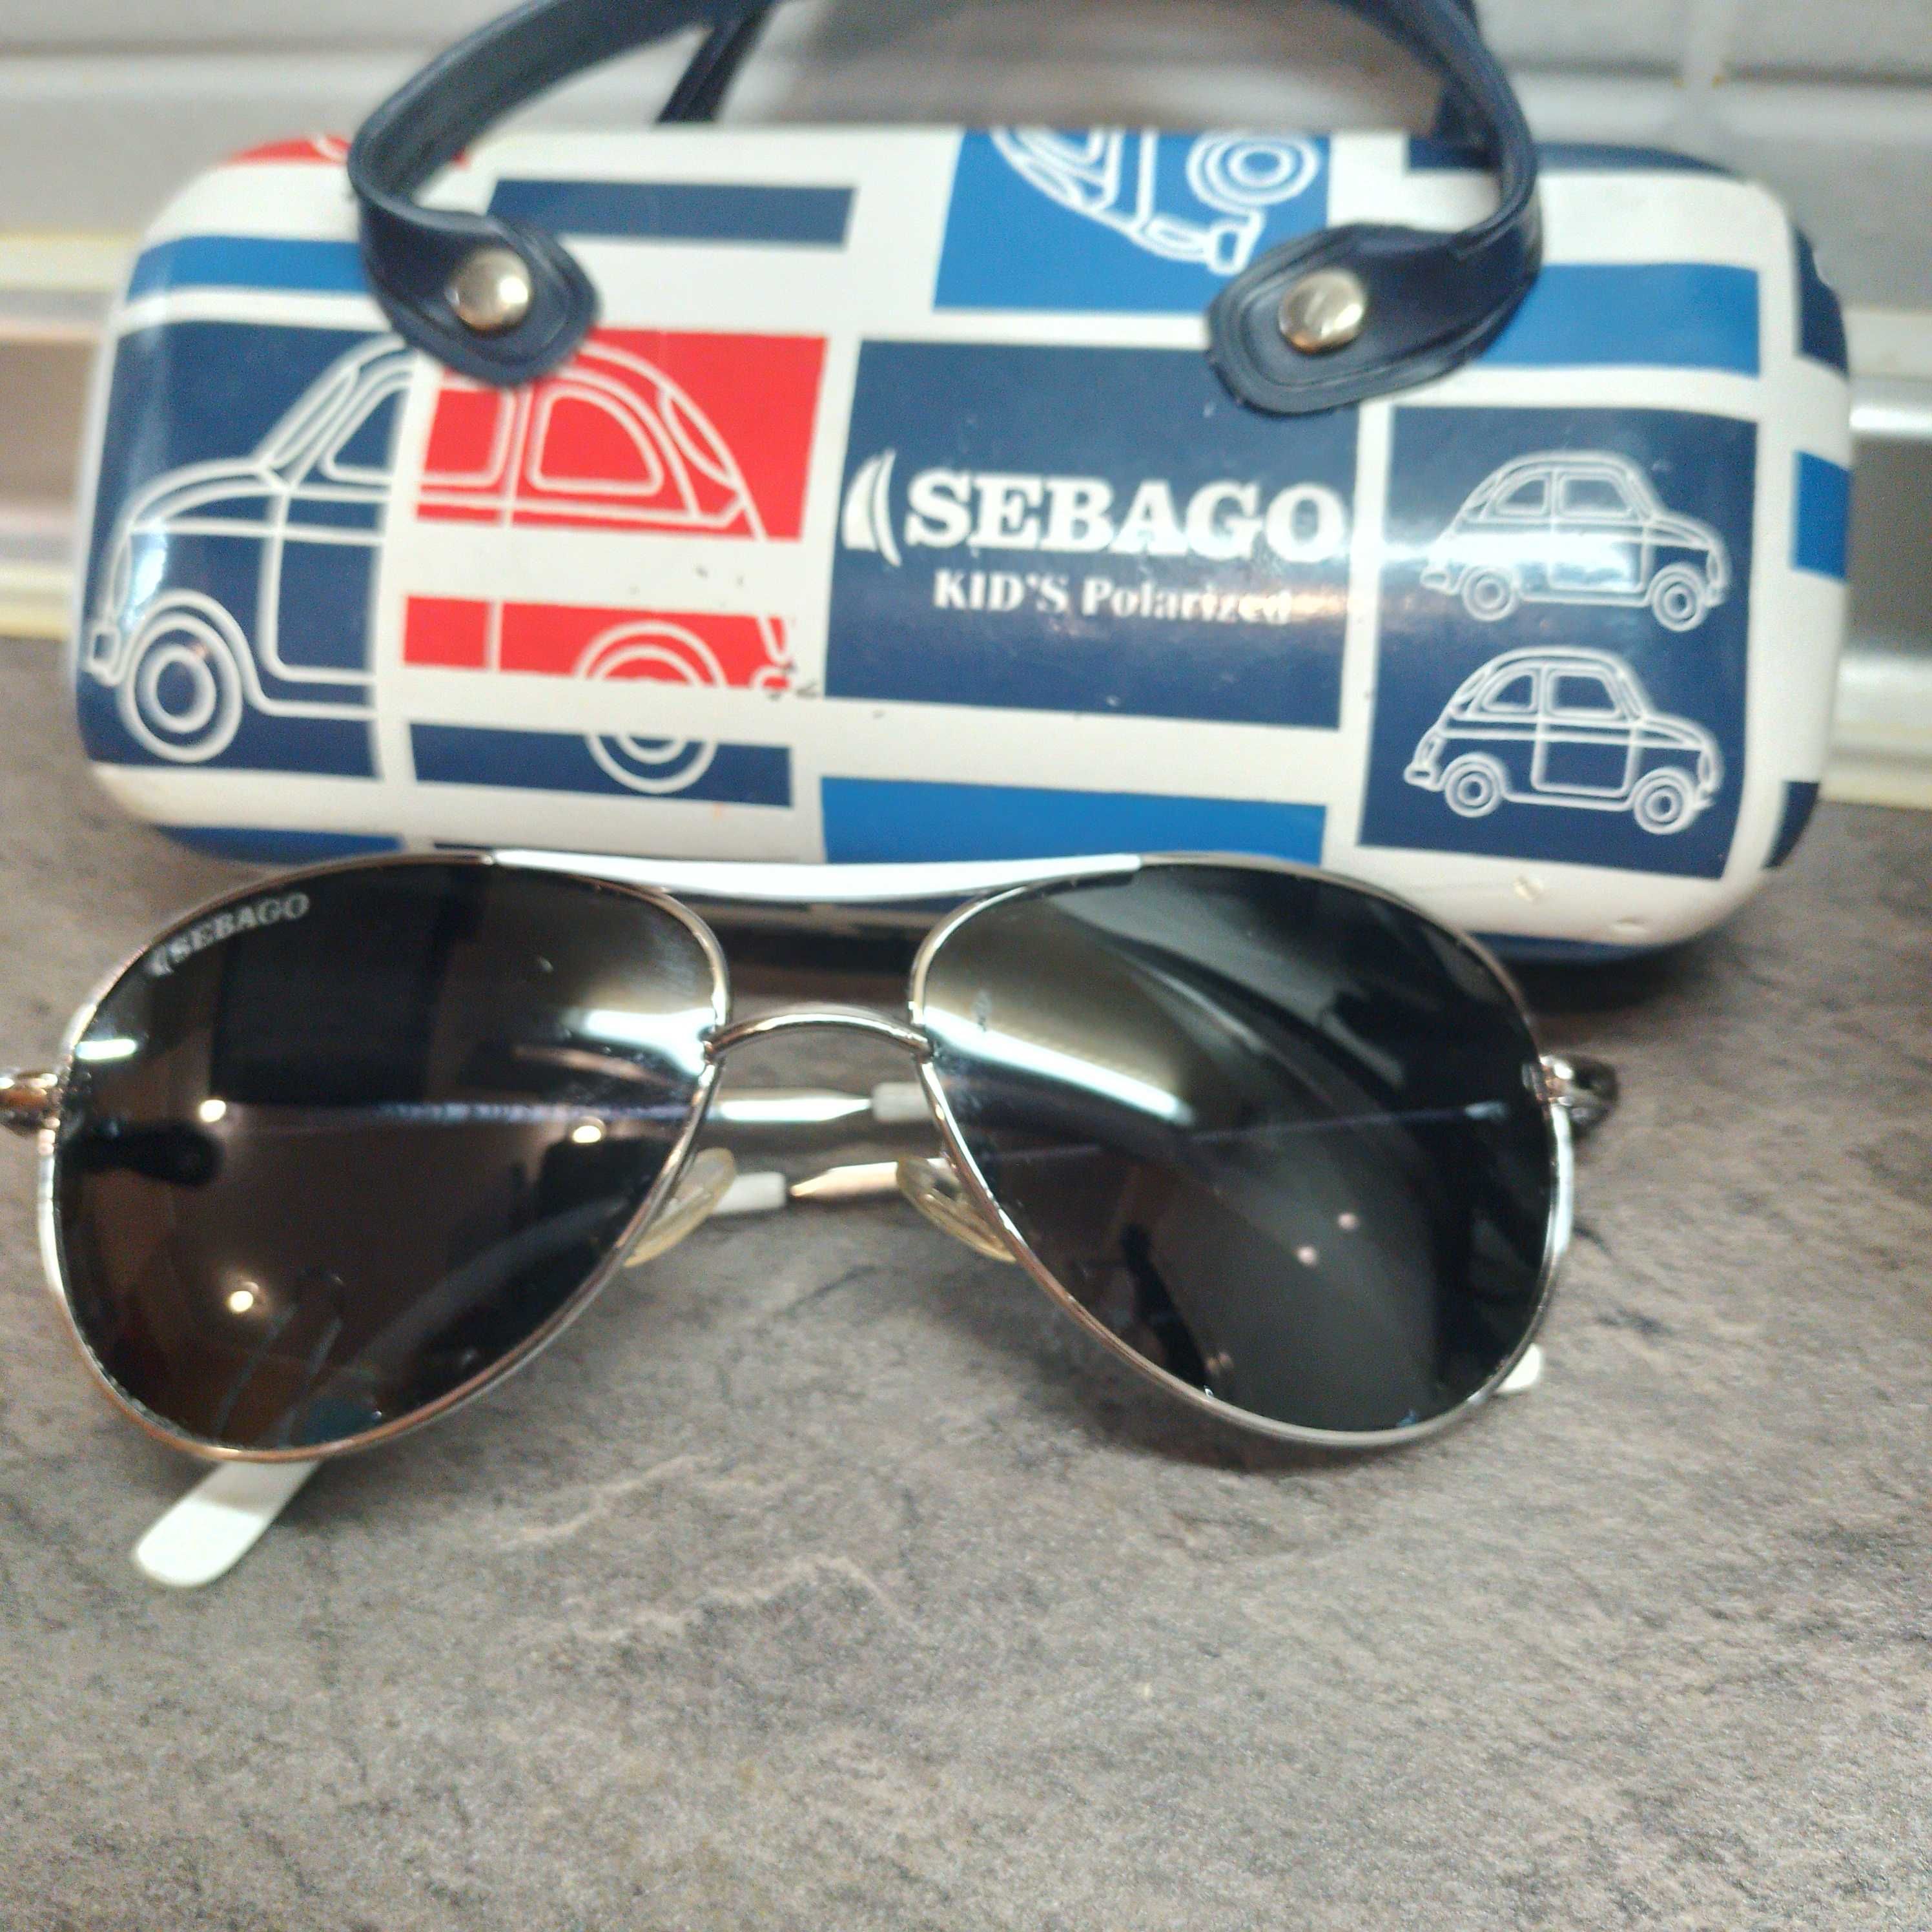 Продам солнцезащитные очки детские "Sebago". Авиаторы